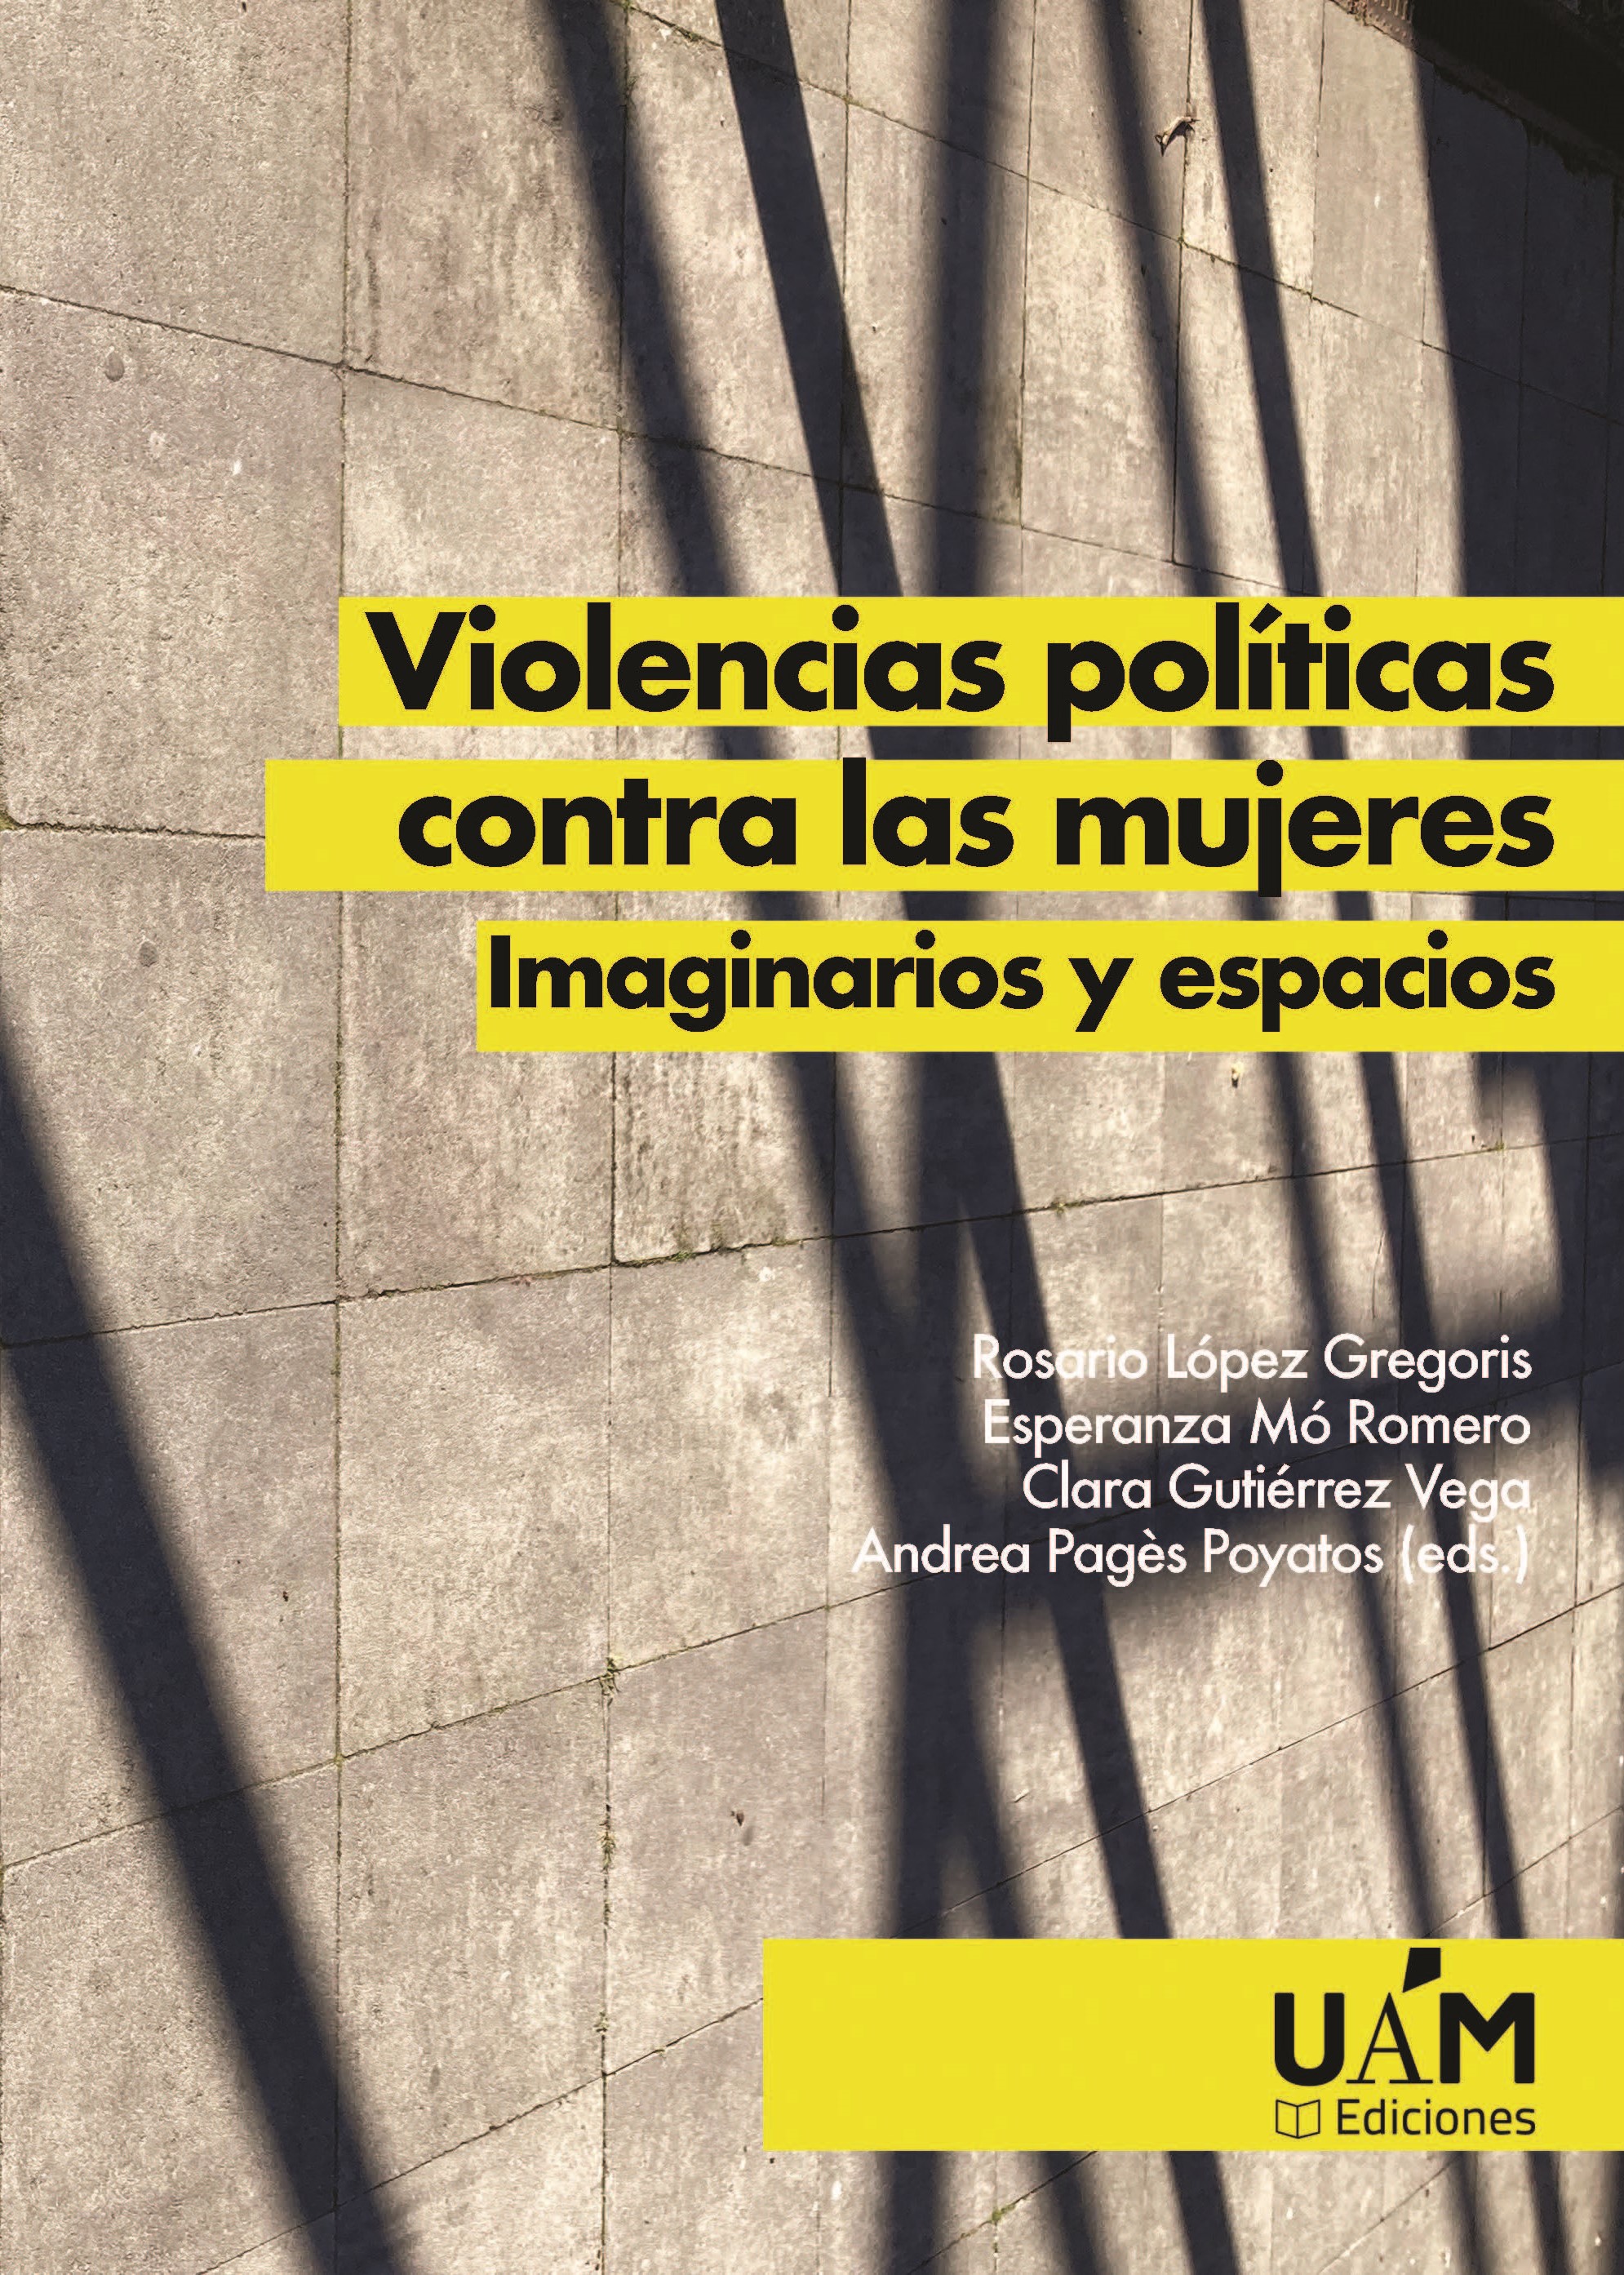 Imagen de portada del libro Violencias políticas contra las mujeres. Imaginarios y espacios